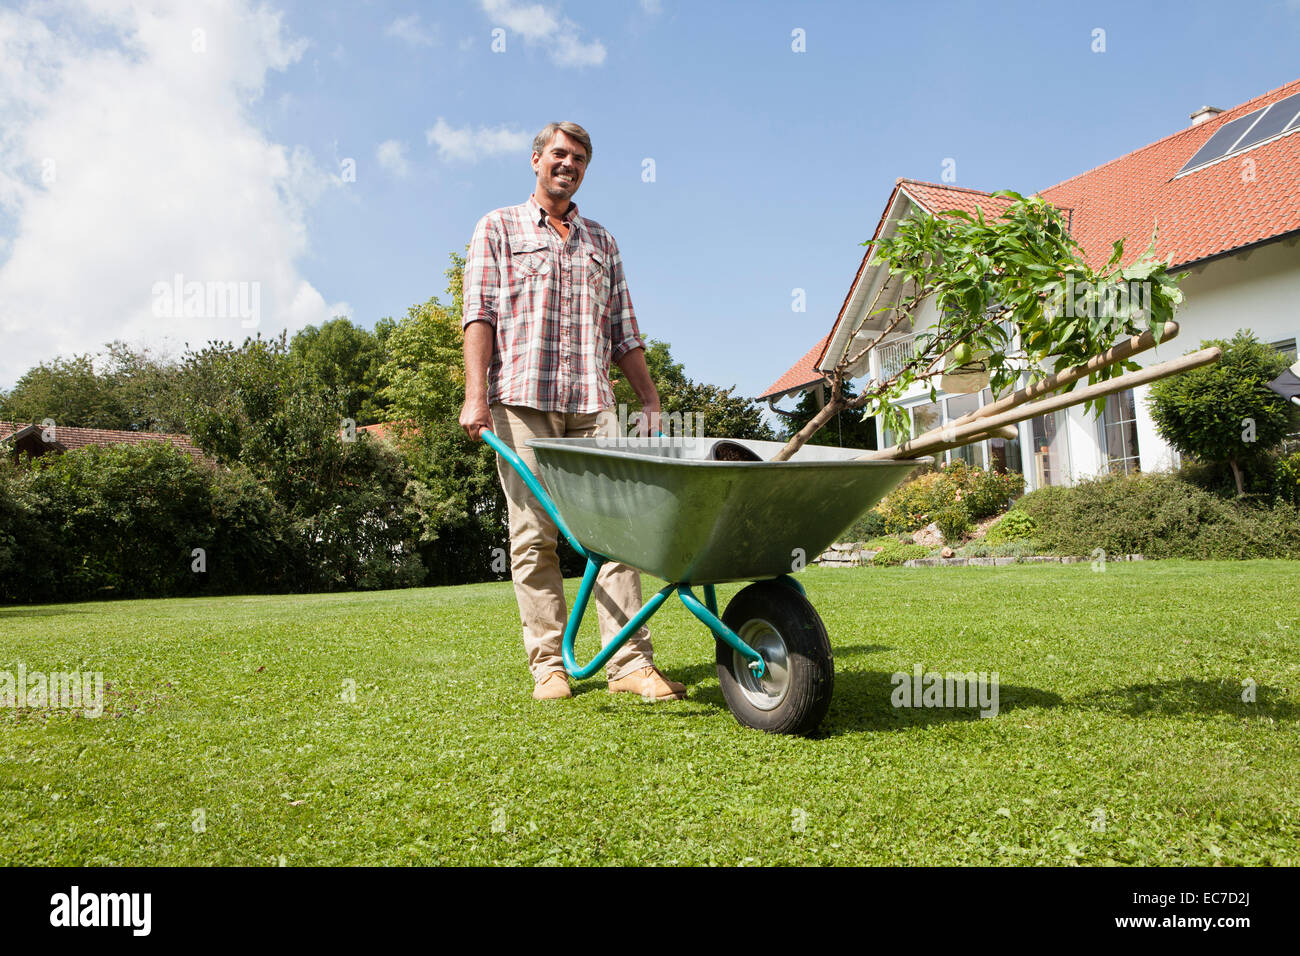 Man with wheelbarrow in garden Stock Photo